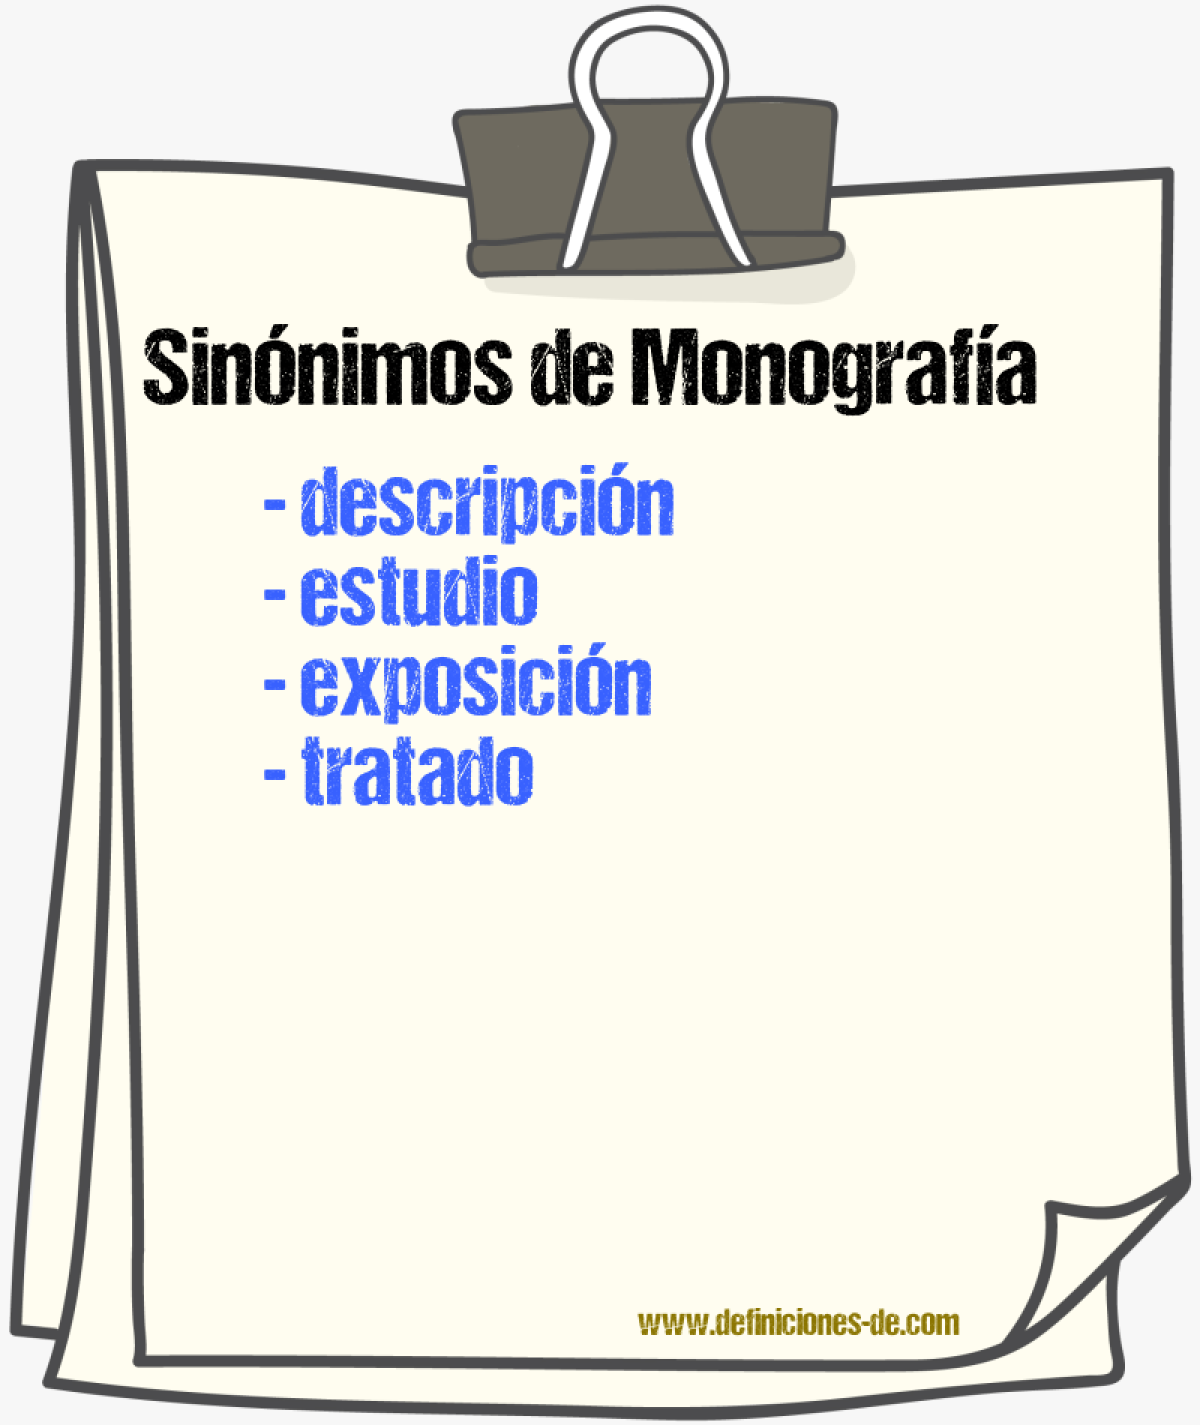 Sinónimos de monografía